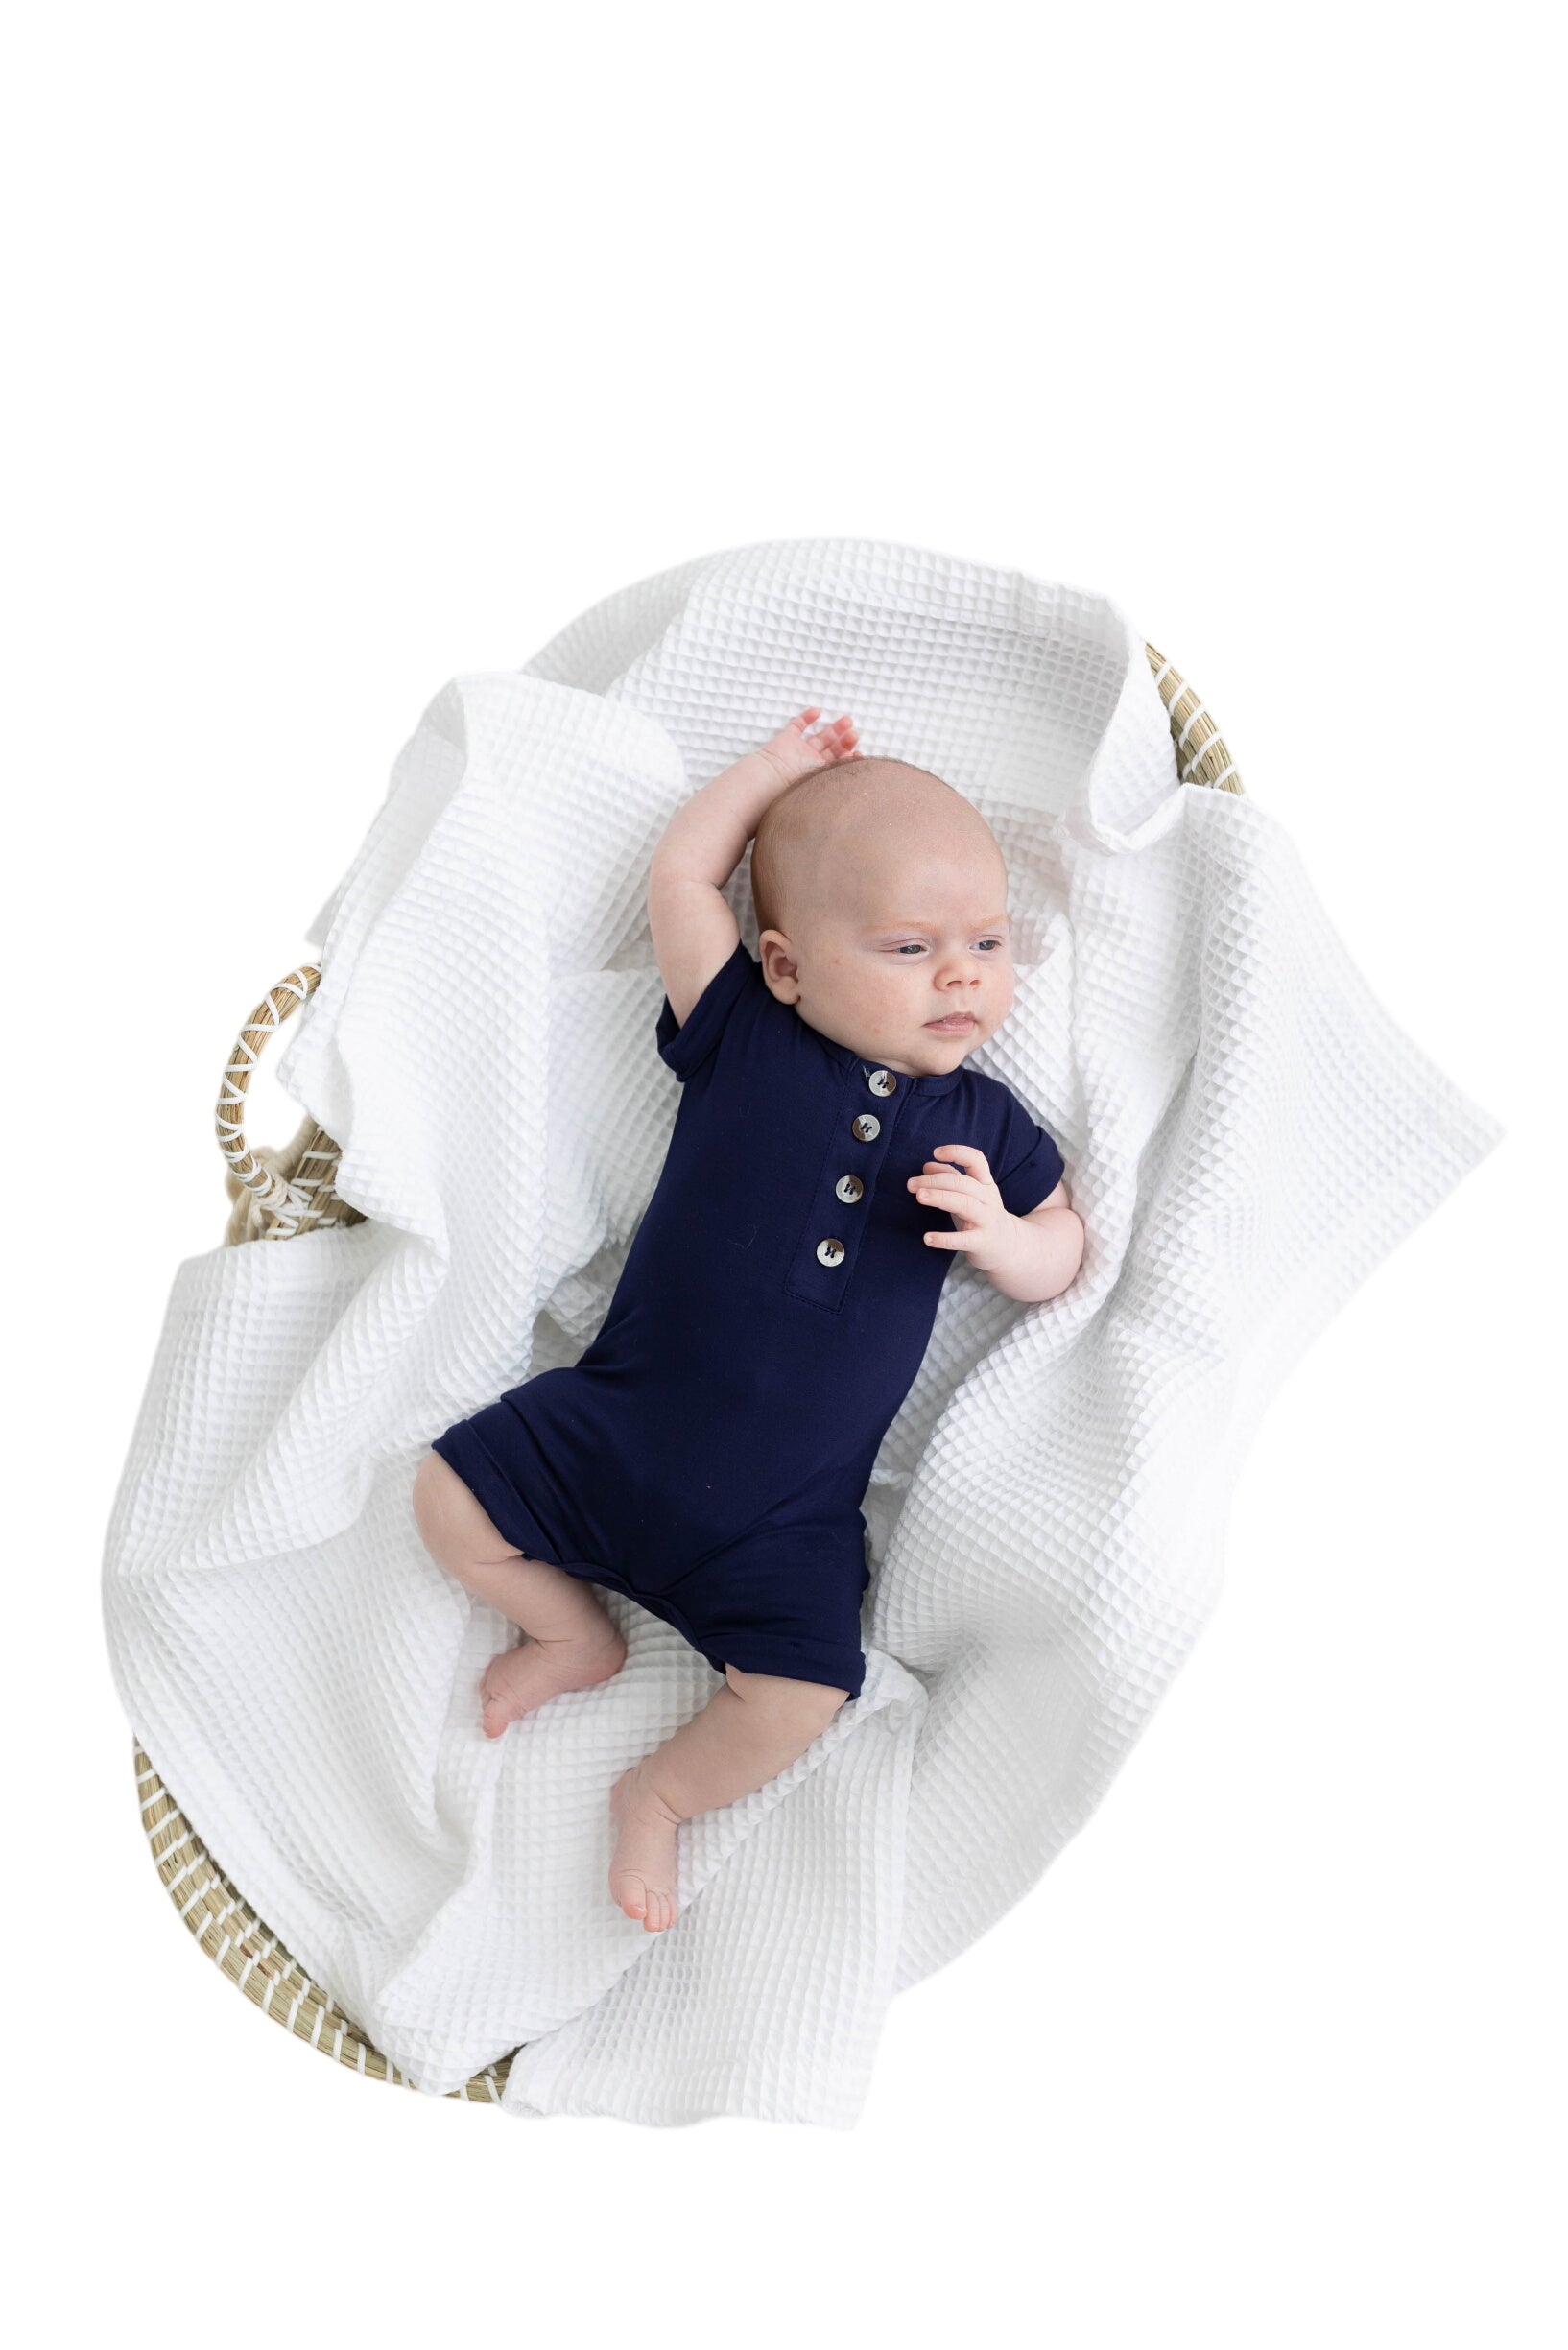 Baby Romper - (newborn-12 Months) White, Navy Blue, Pink, Camel Brown